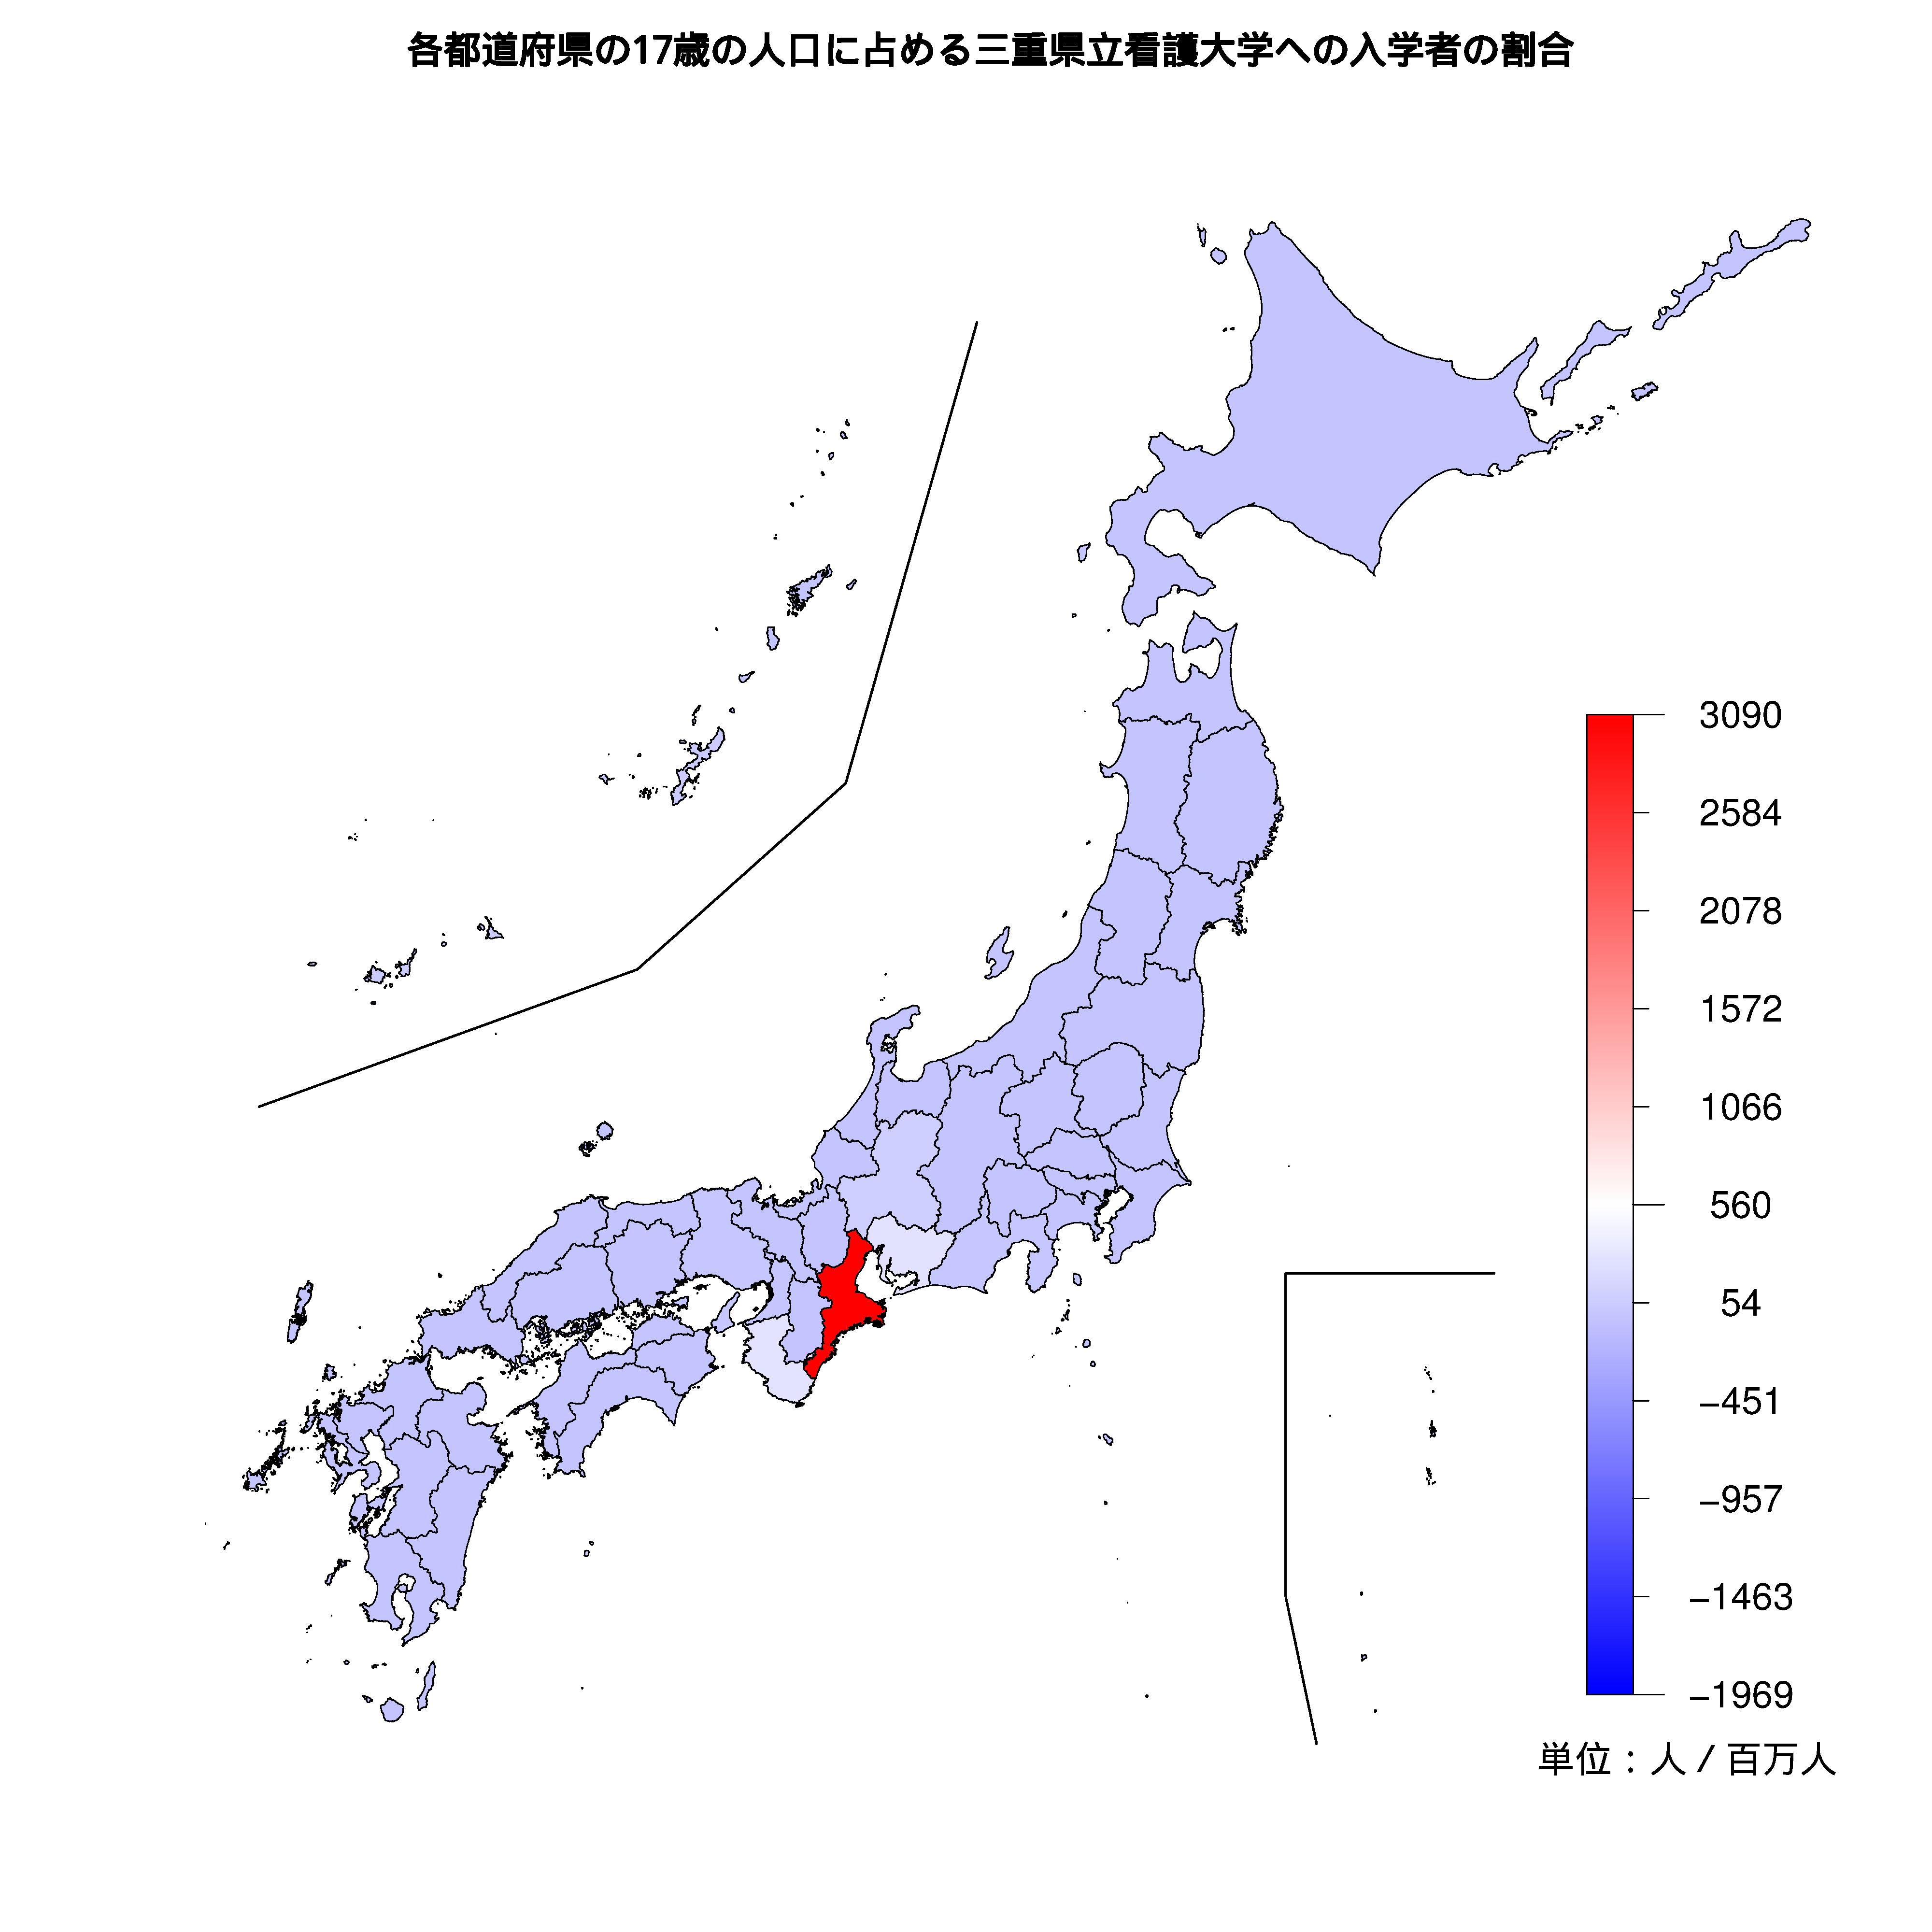 三重県立看護大学への入学者が多い都道府県の色分け地図